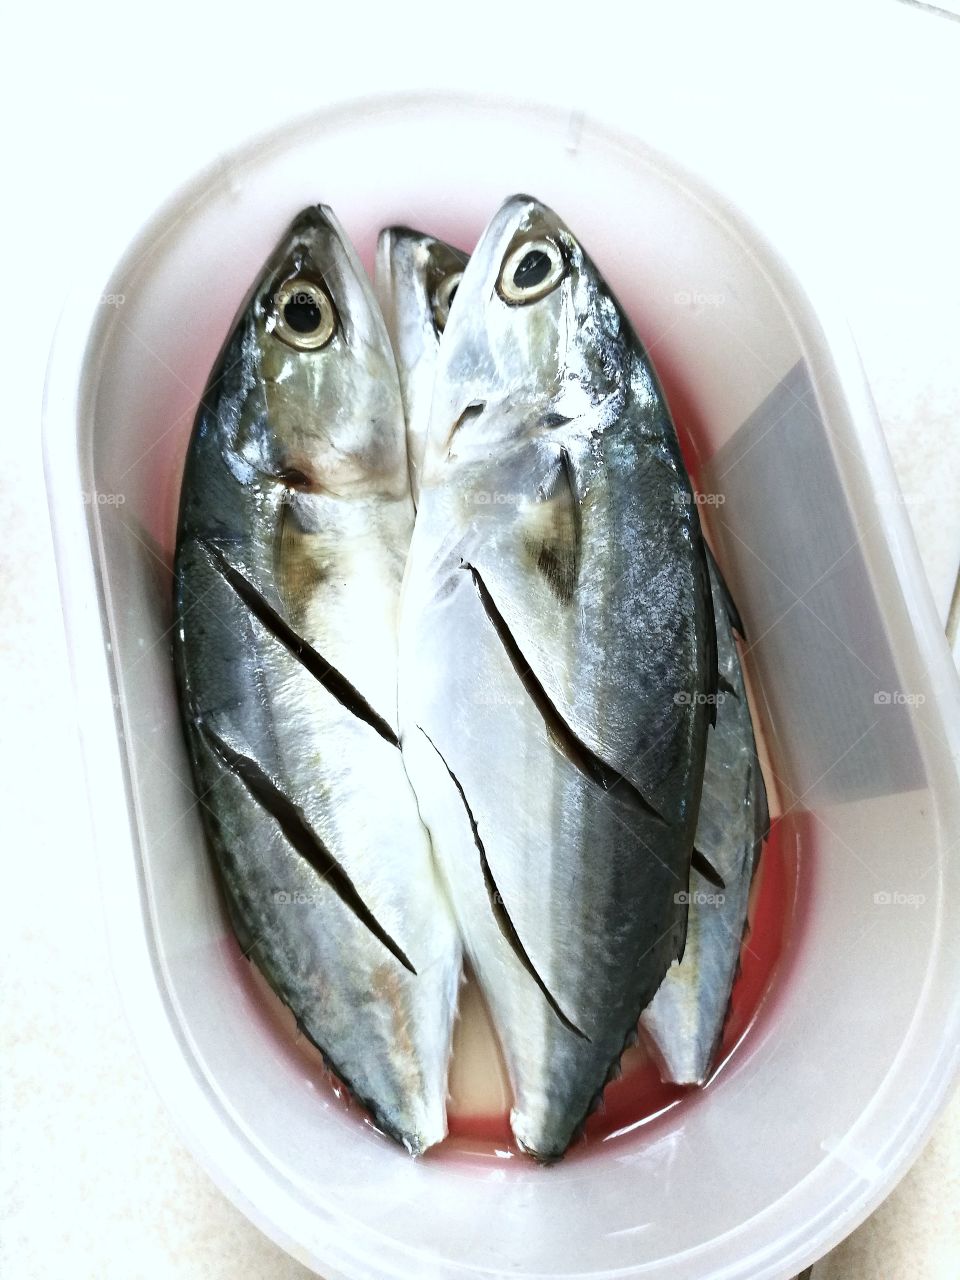 Closeup of fresh mackerel in plastic container.